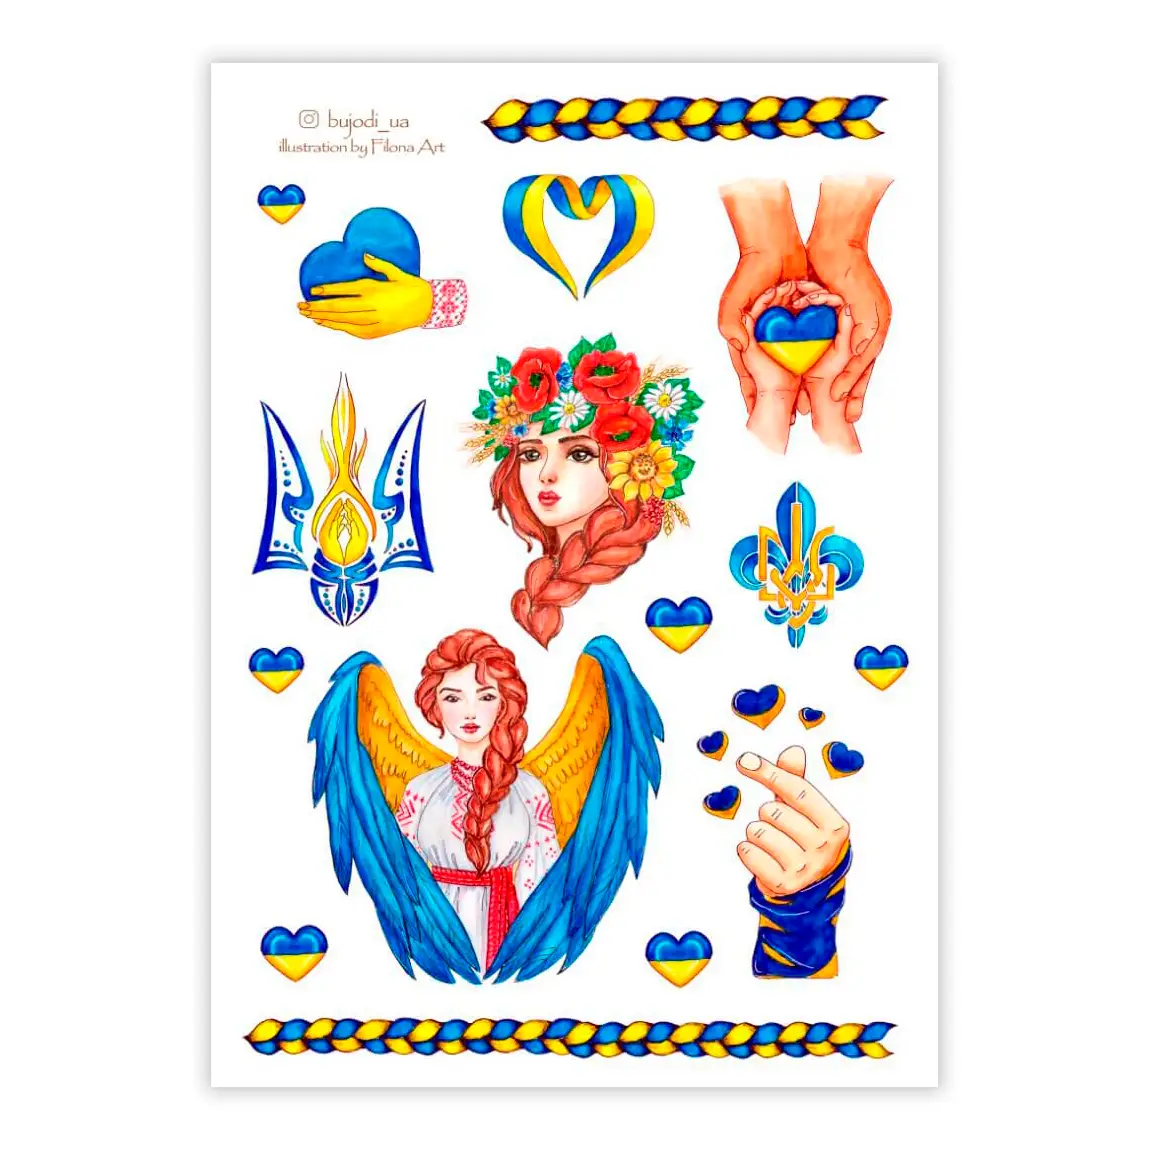 Купить декоративные наклейки в интернет магазине l2luna.ru